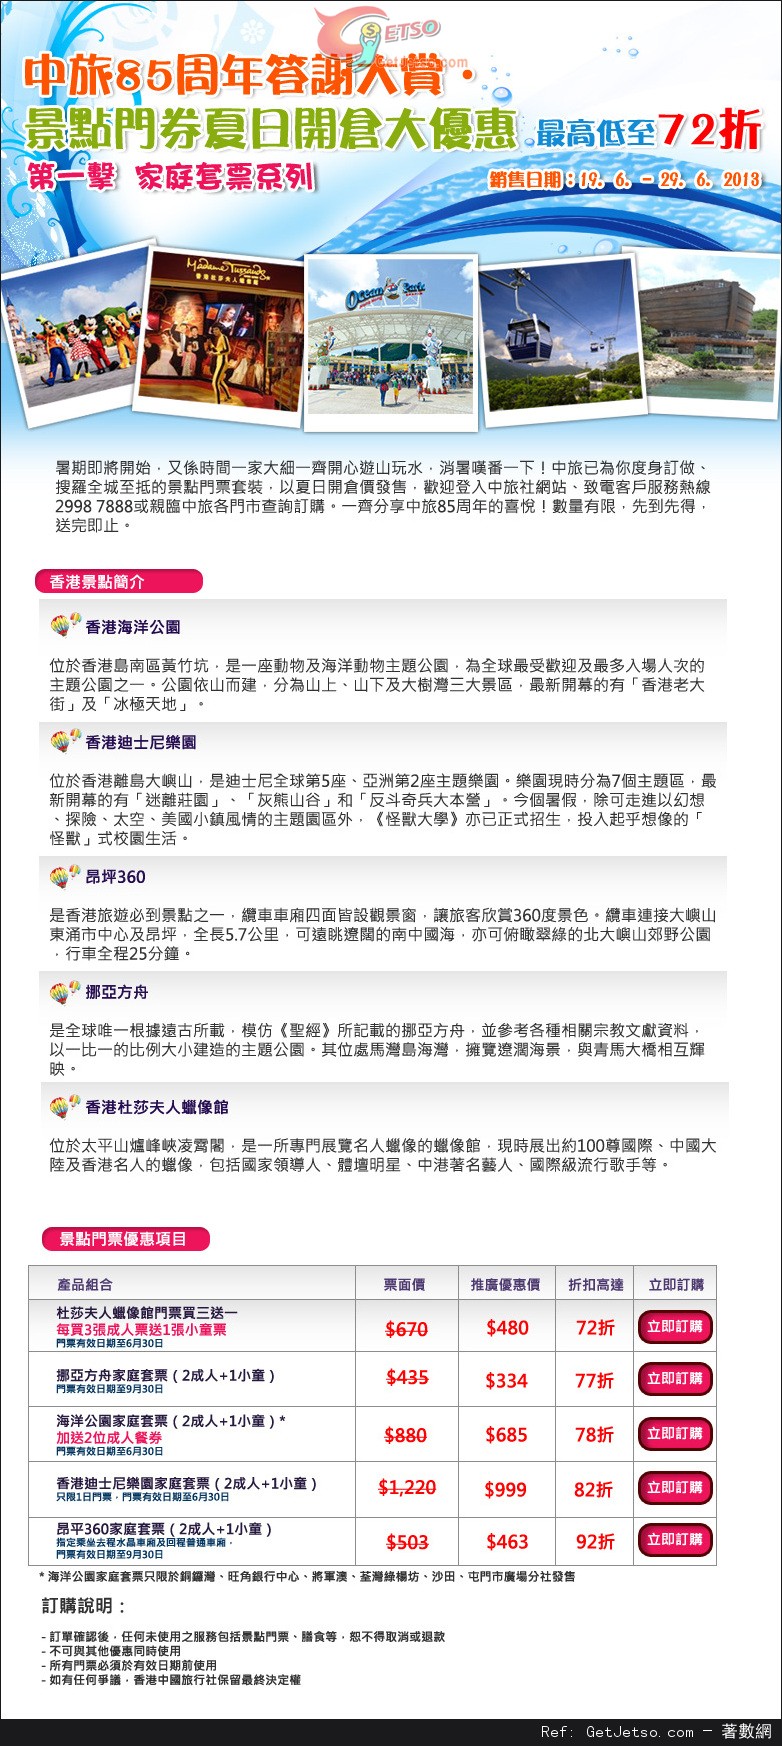 中旅社香港景點門票/美食套餐券開倉低至72折優惠(至13年6月29日)圖片1